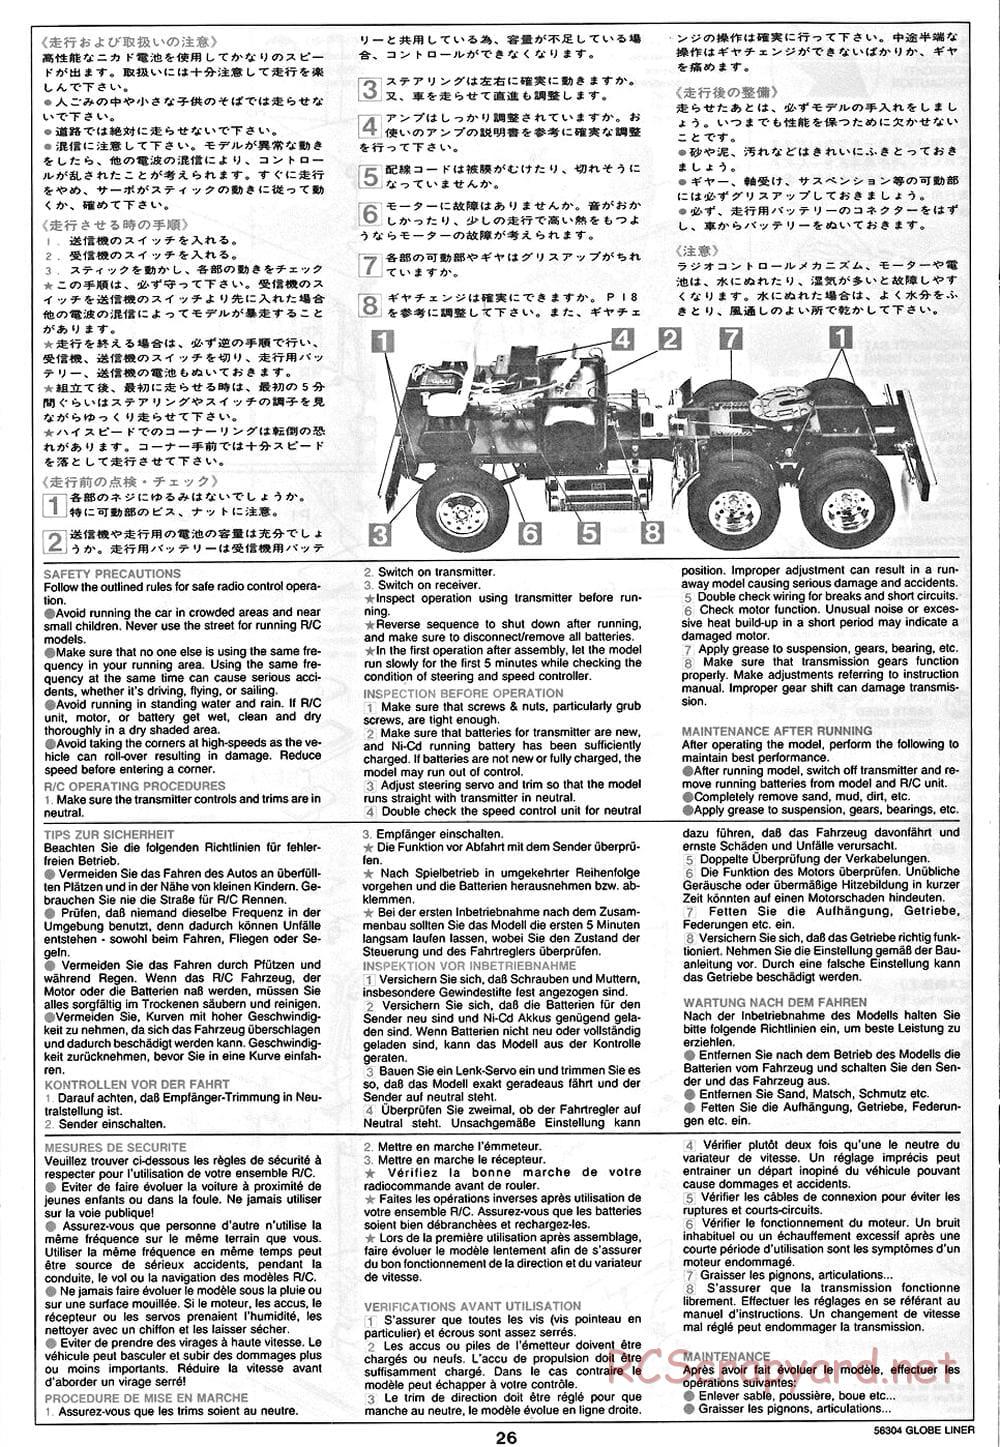 Tamiya - Globe Liner - Manual - Page 26